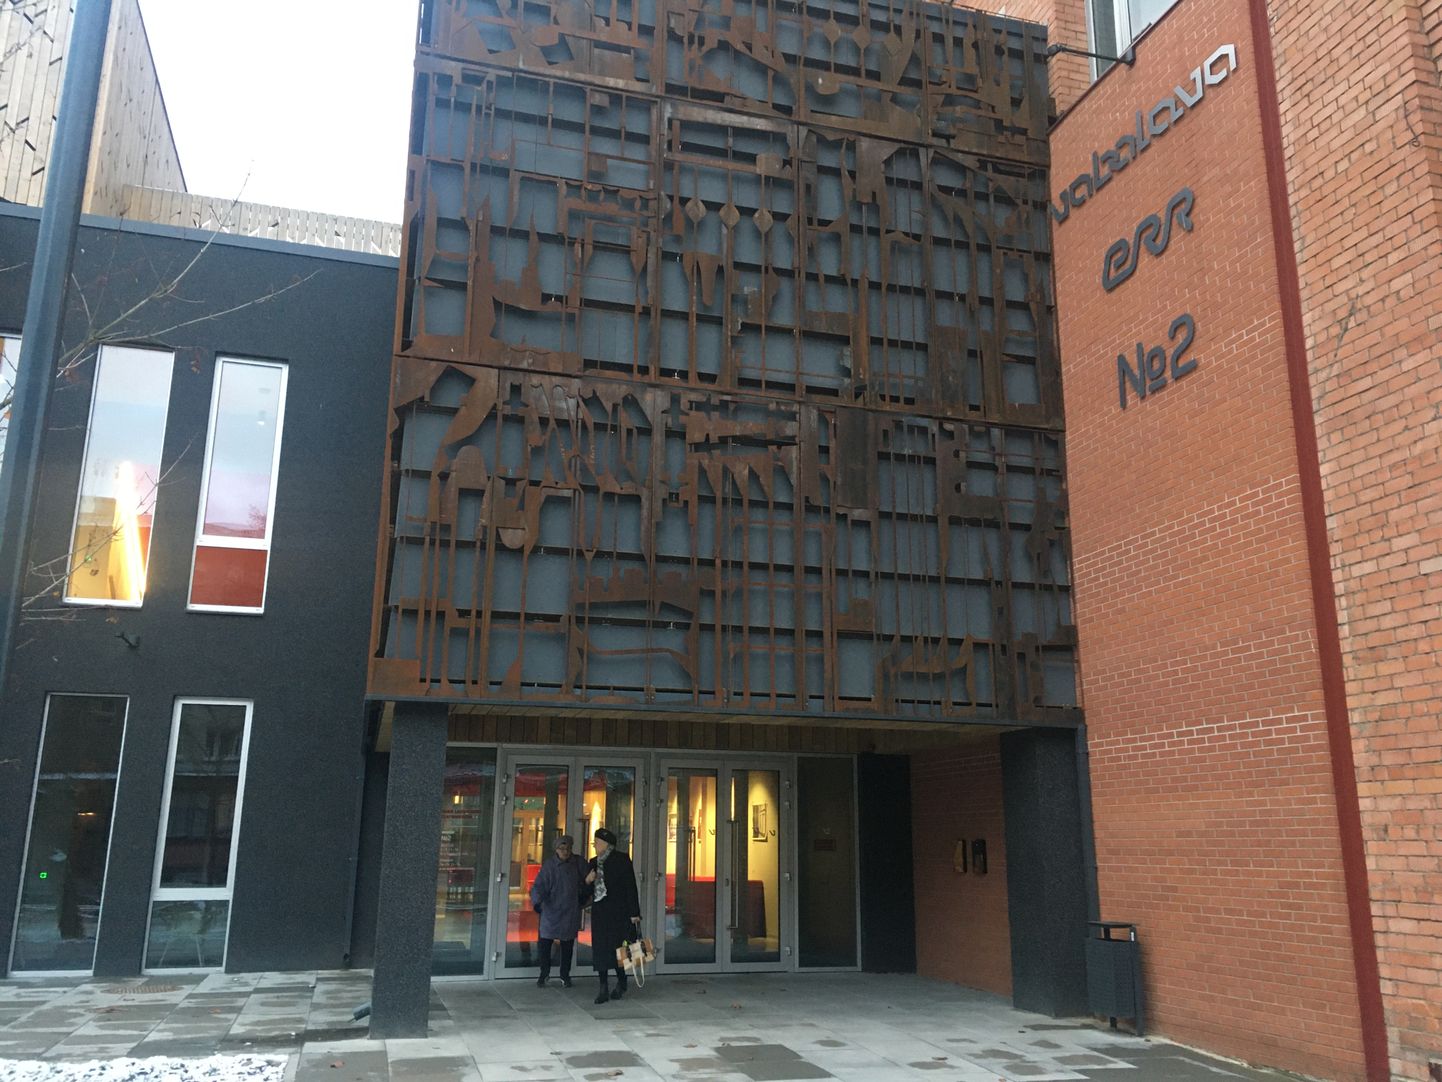 Vaba Lava teatrikeskus avati Narvas Linda tn 2 2018. aasta detsembris.